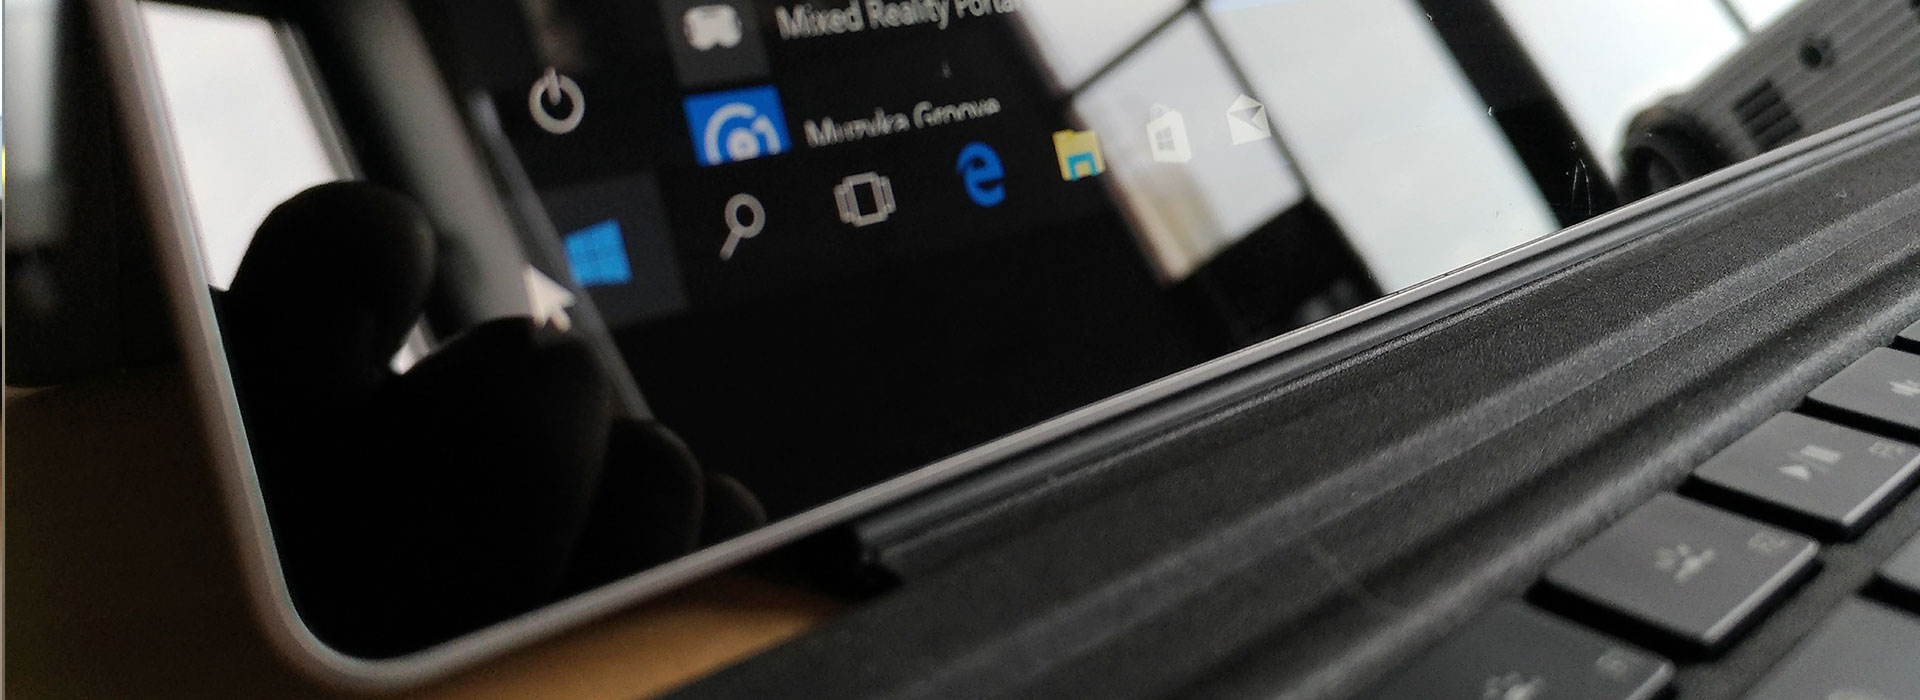 [PL] Surface 4 Pro – sprzęt do codziennej pracy?!